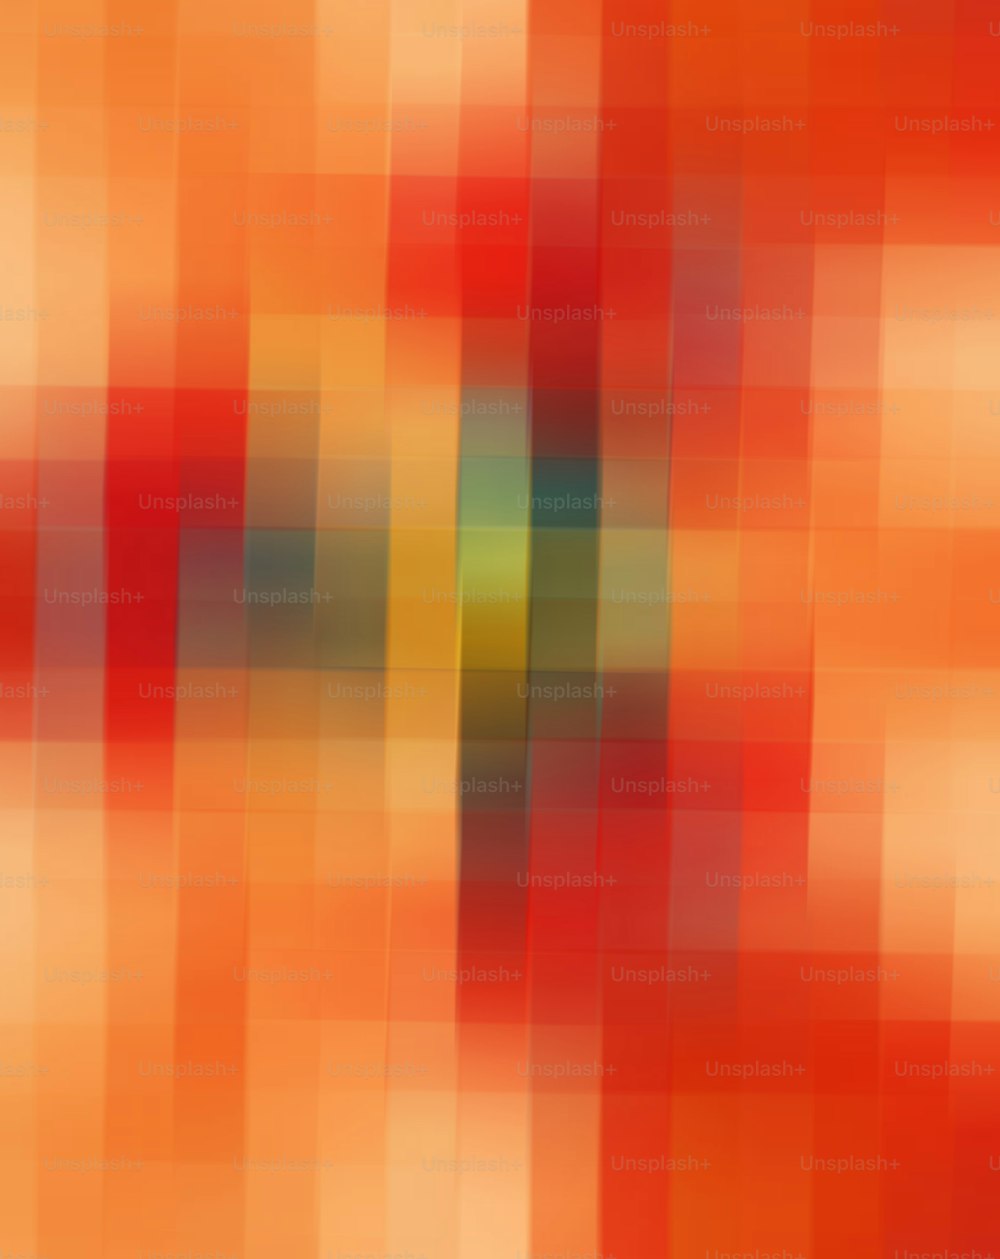 Una imagen borrosa de un fondo naranja y rojo